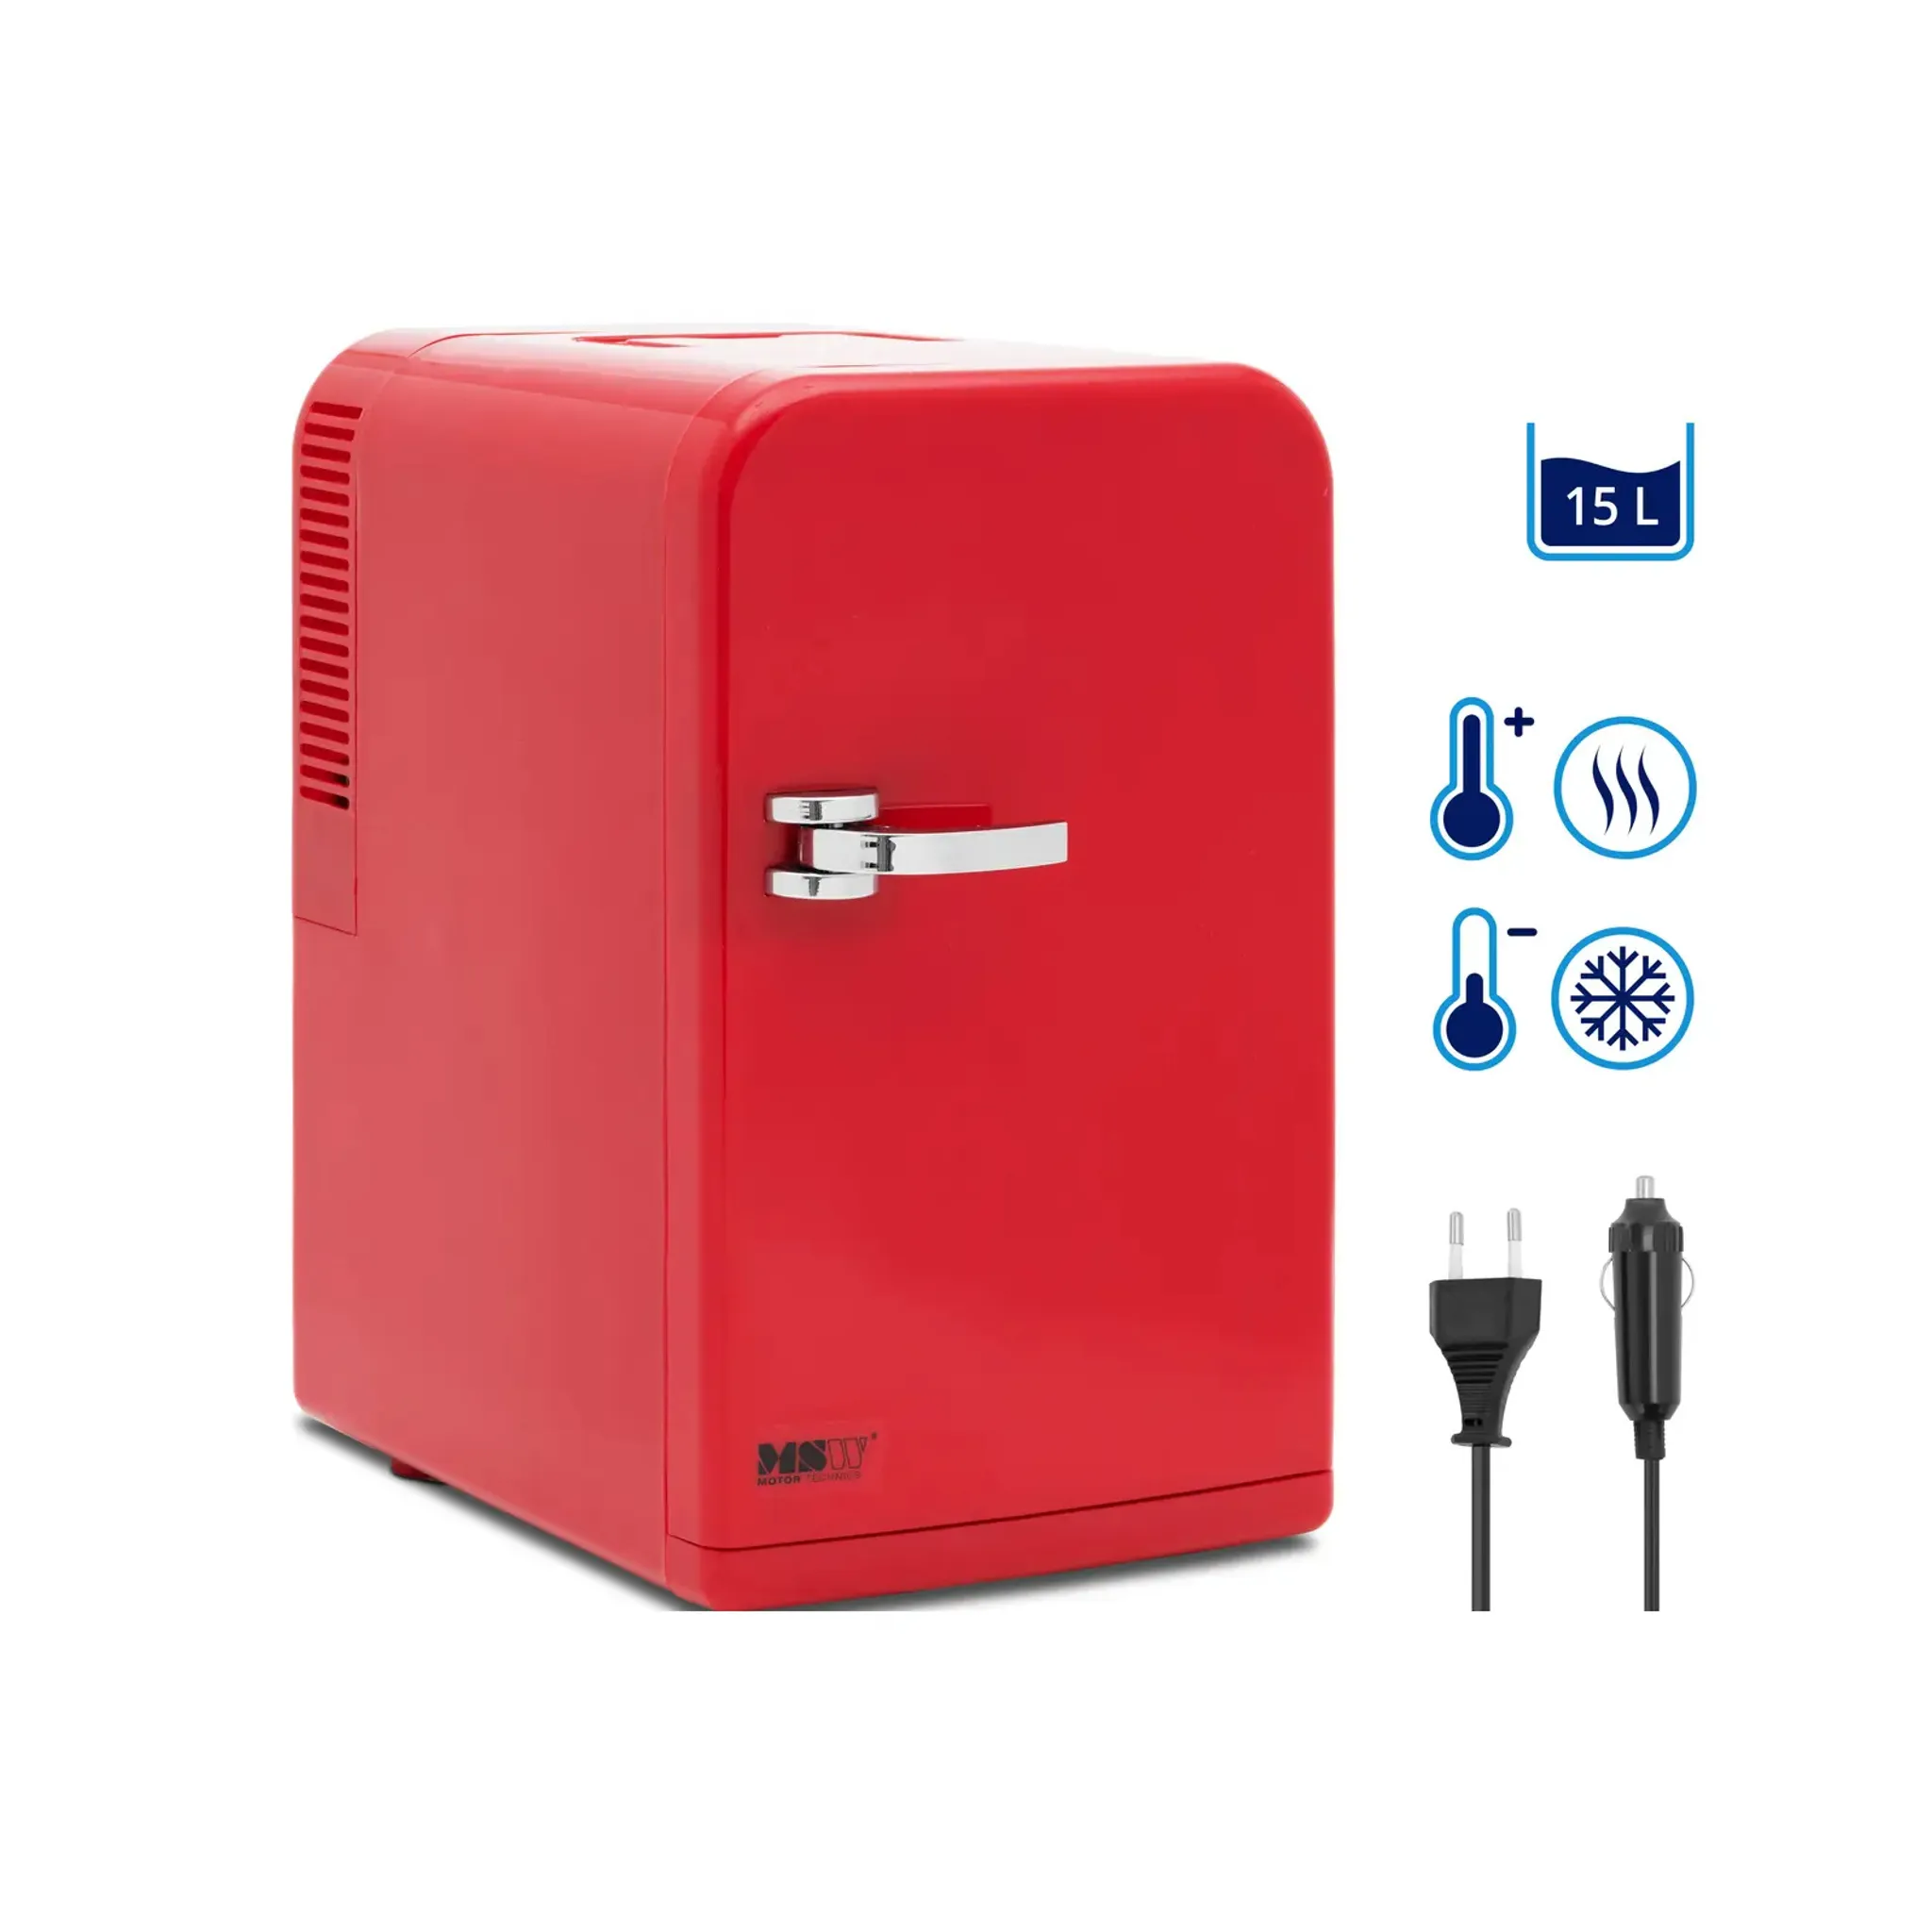 TACKLIFE TF06PRO Kosmetikkühlschrank, Mini Kühlschrank 6L mit